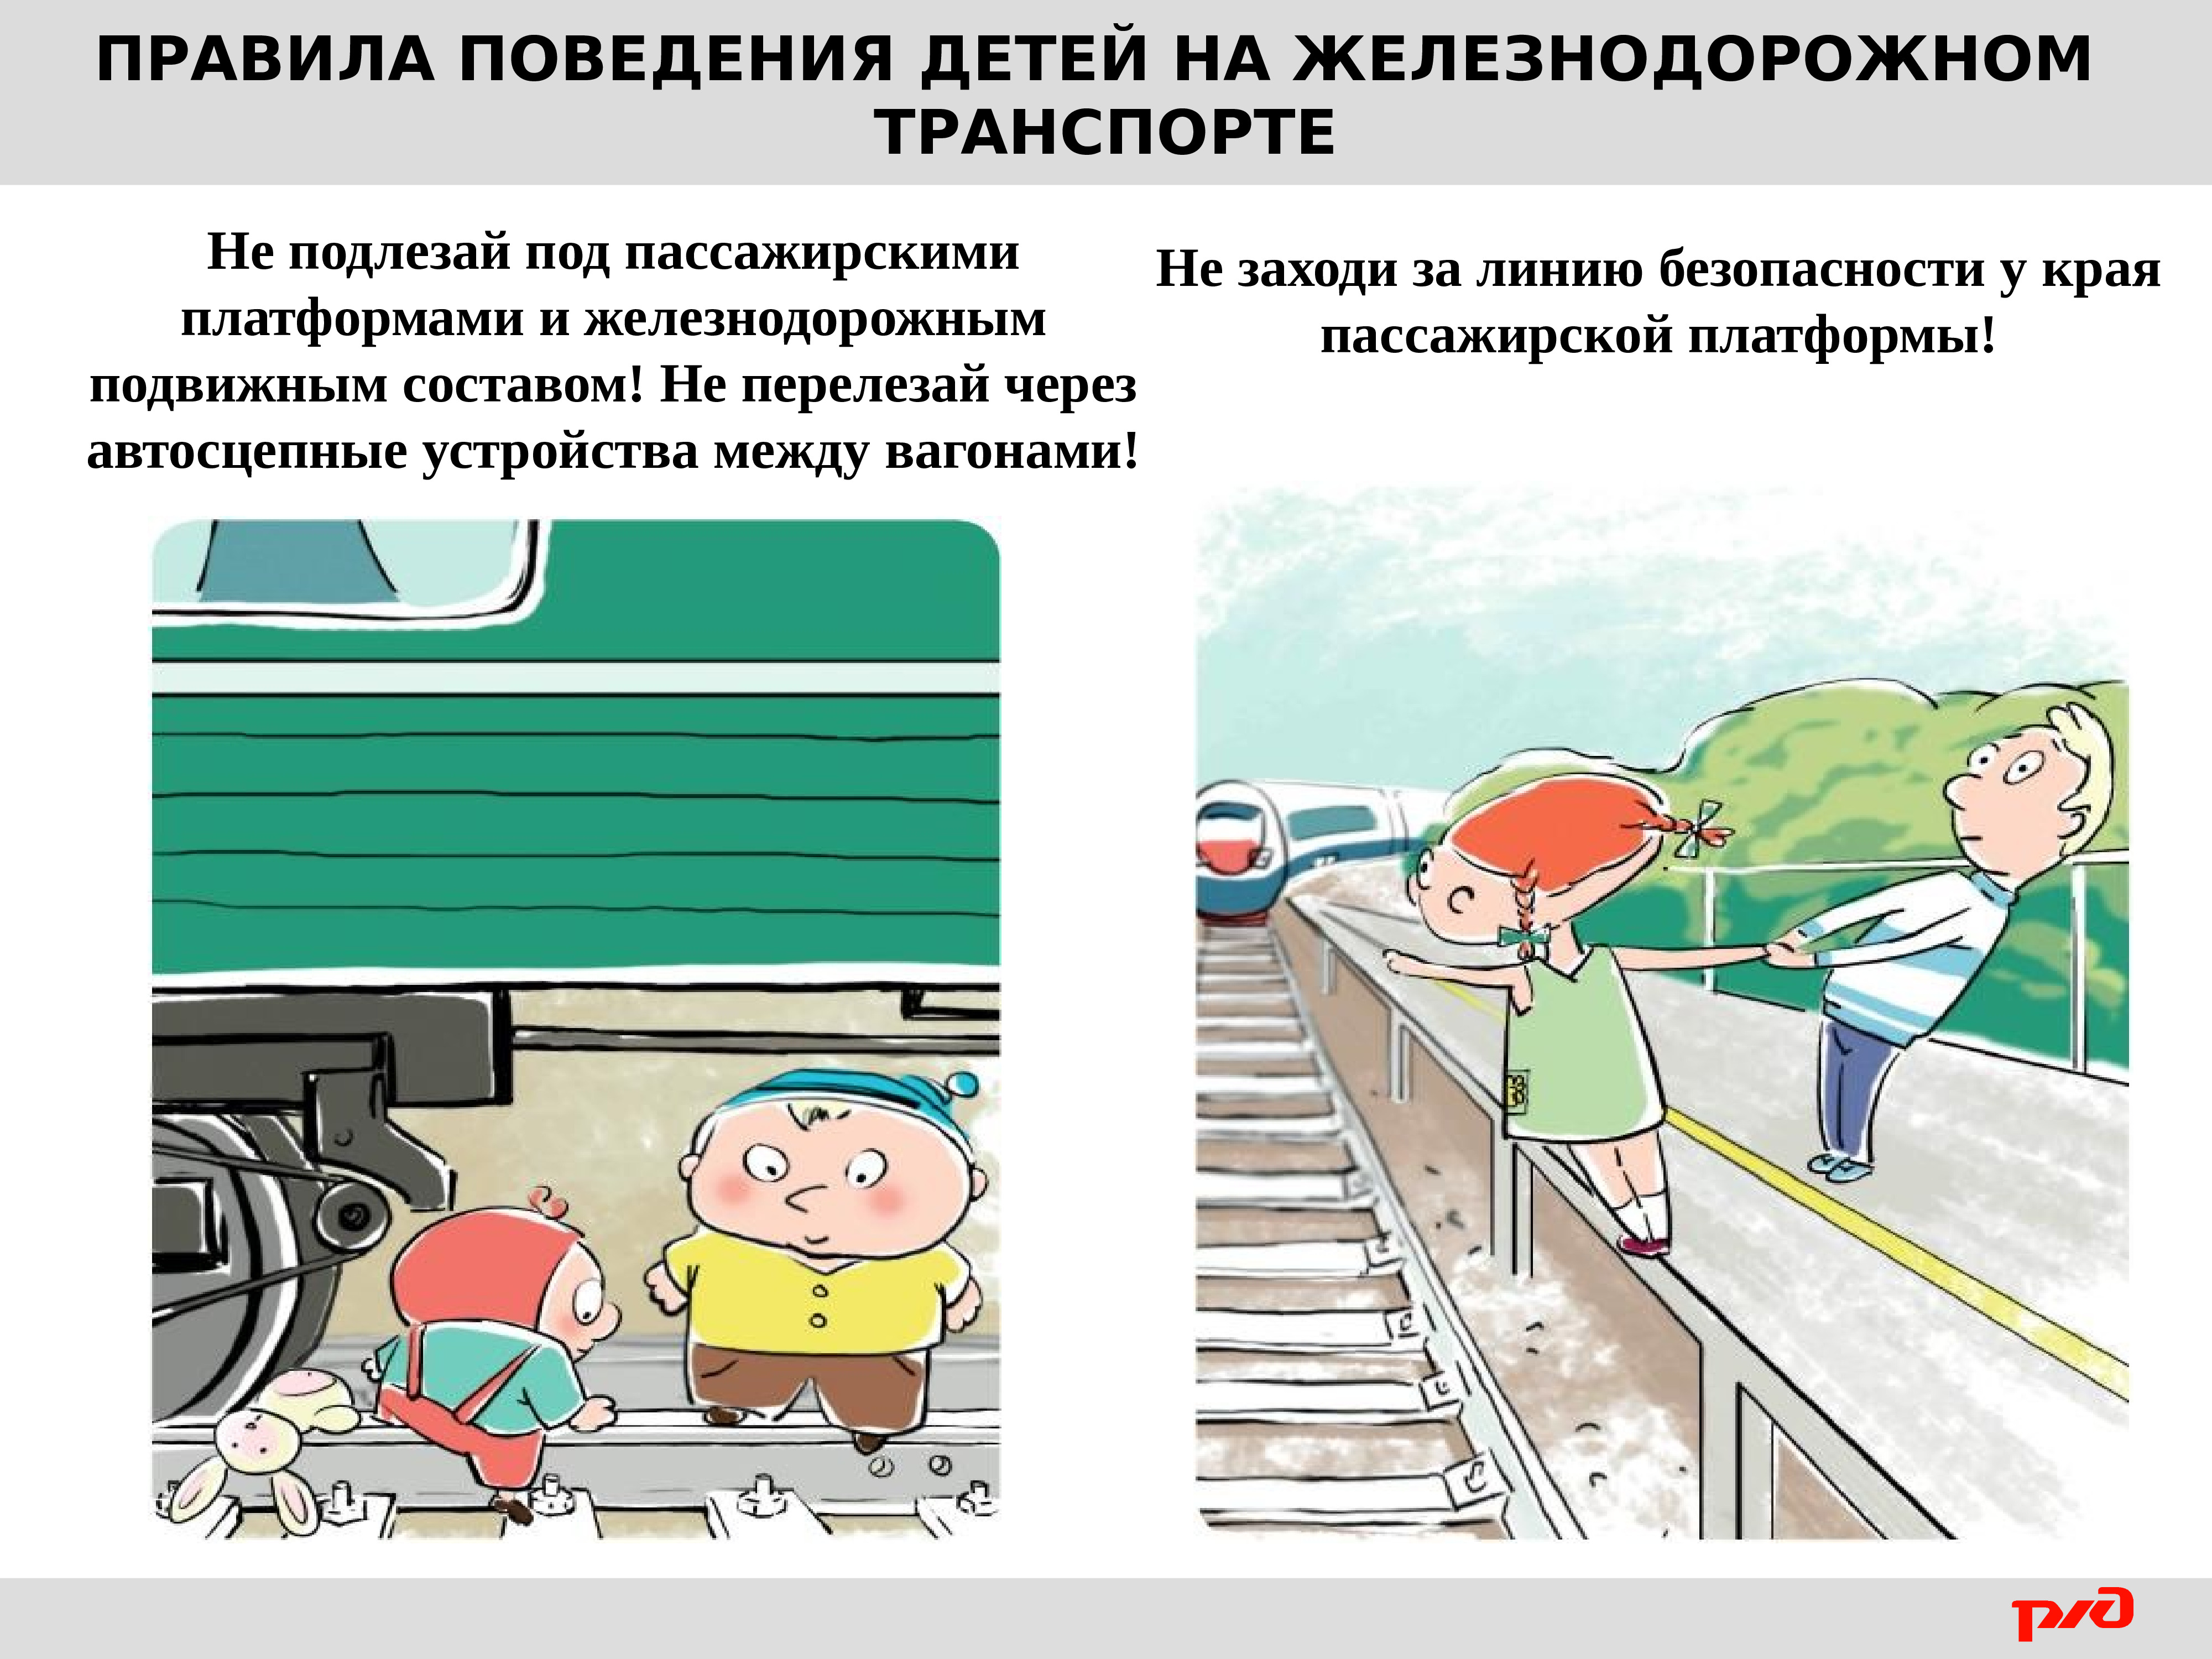 Безопасность в пути для детей. Правила безопасности на Железнодорожном транспорте для детей. Безопасное поведение детей на Железнодорожном транспорте. Правилах безопасного поведения на Железнодорожном транспорте. Безопвсность нажелезнгй допоге.